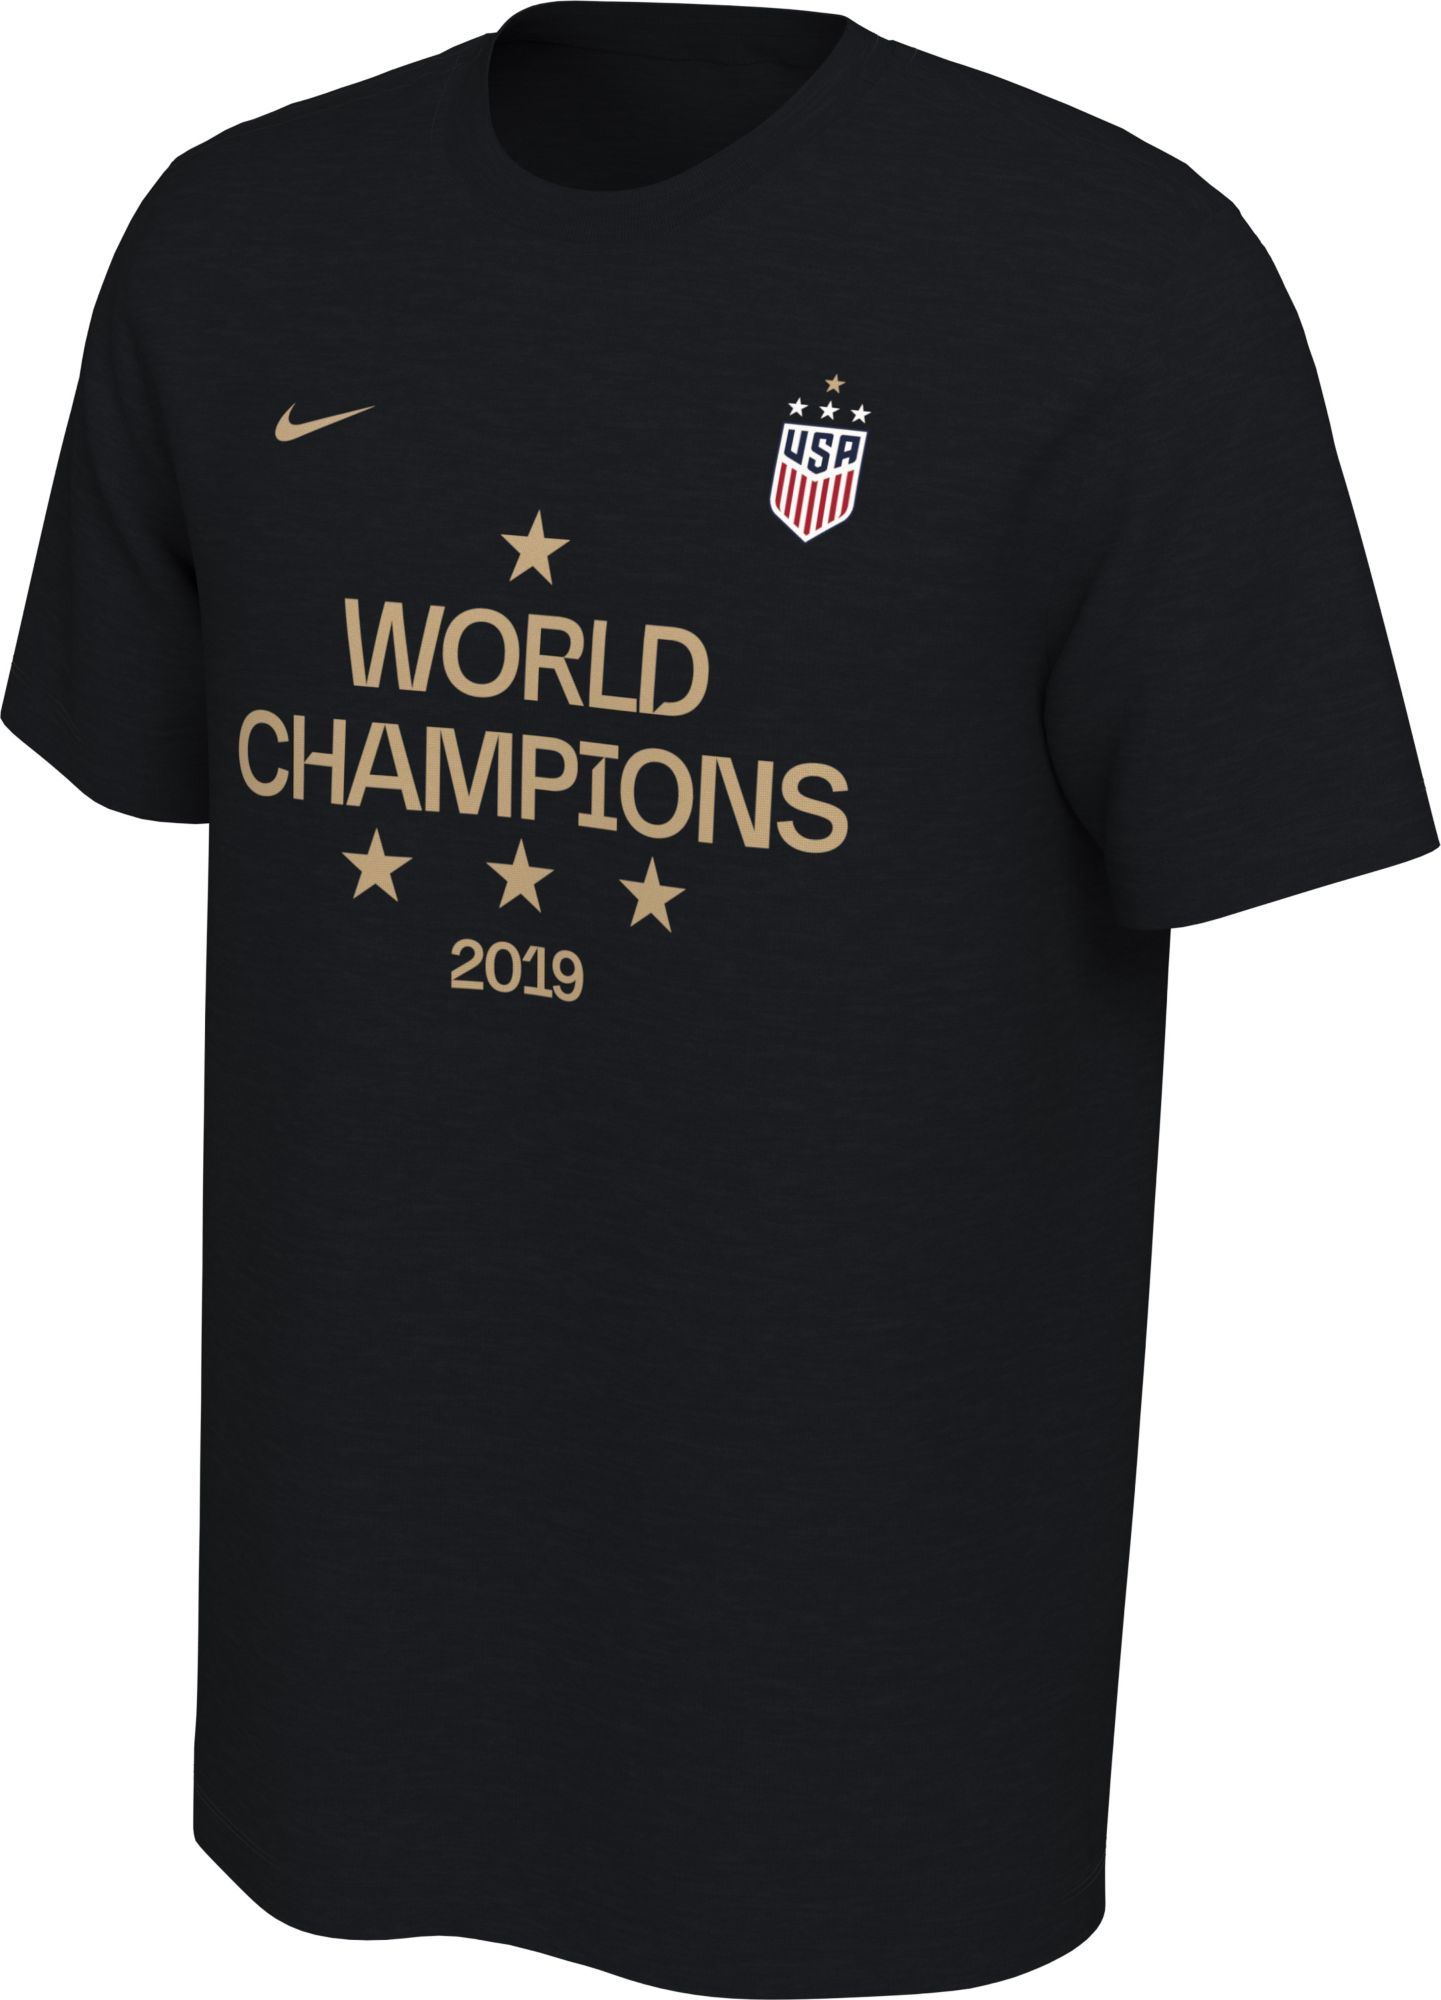 nike women's world cup shirts